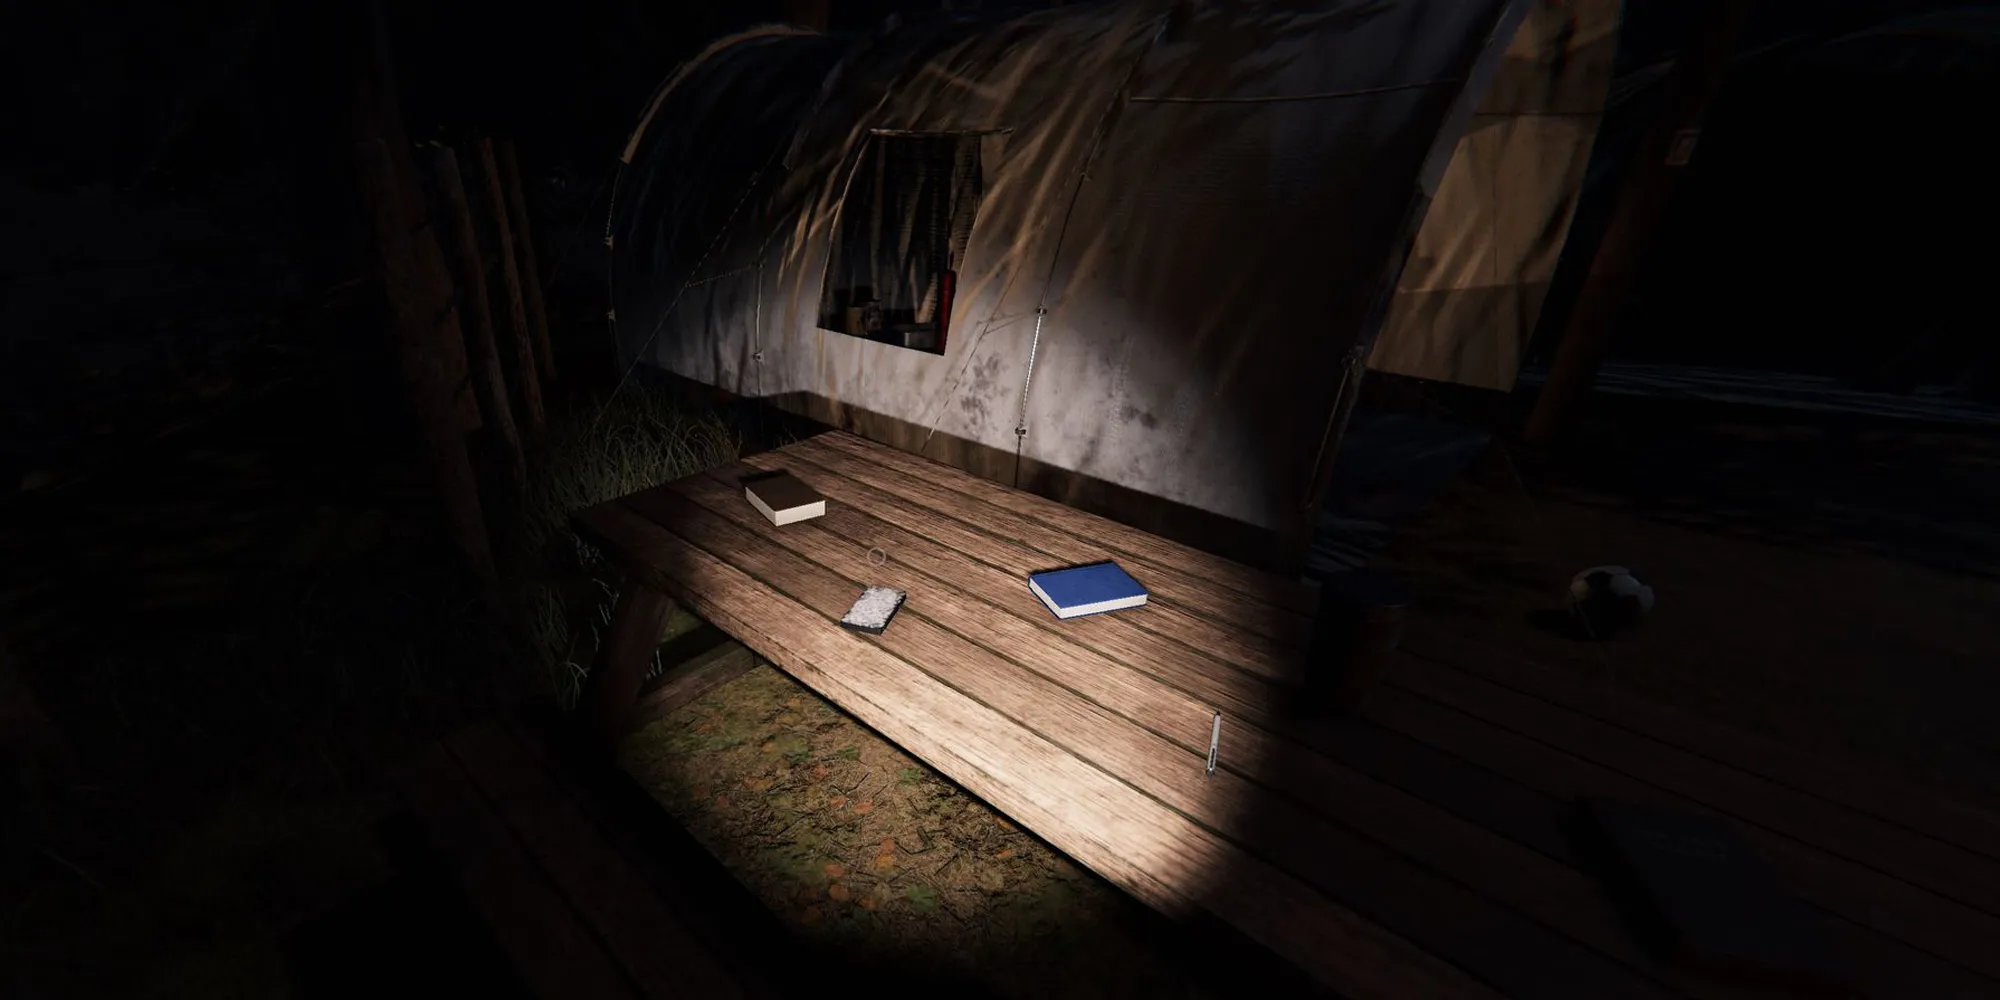 Изображение показывает колоду таро на деревянном пикник-столе рядом с синими книгами. Это изображение находится на Кемпе Вудвинд в Фазмофобии.